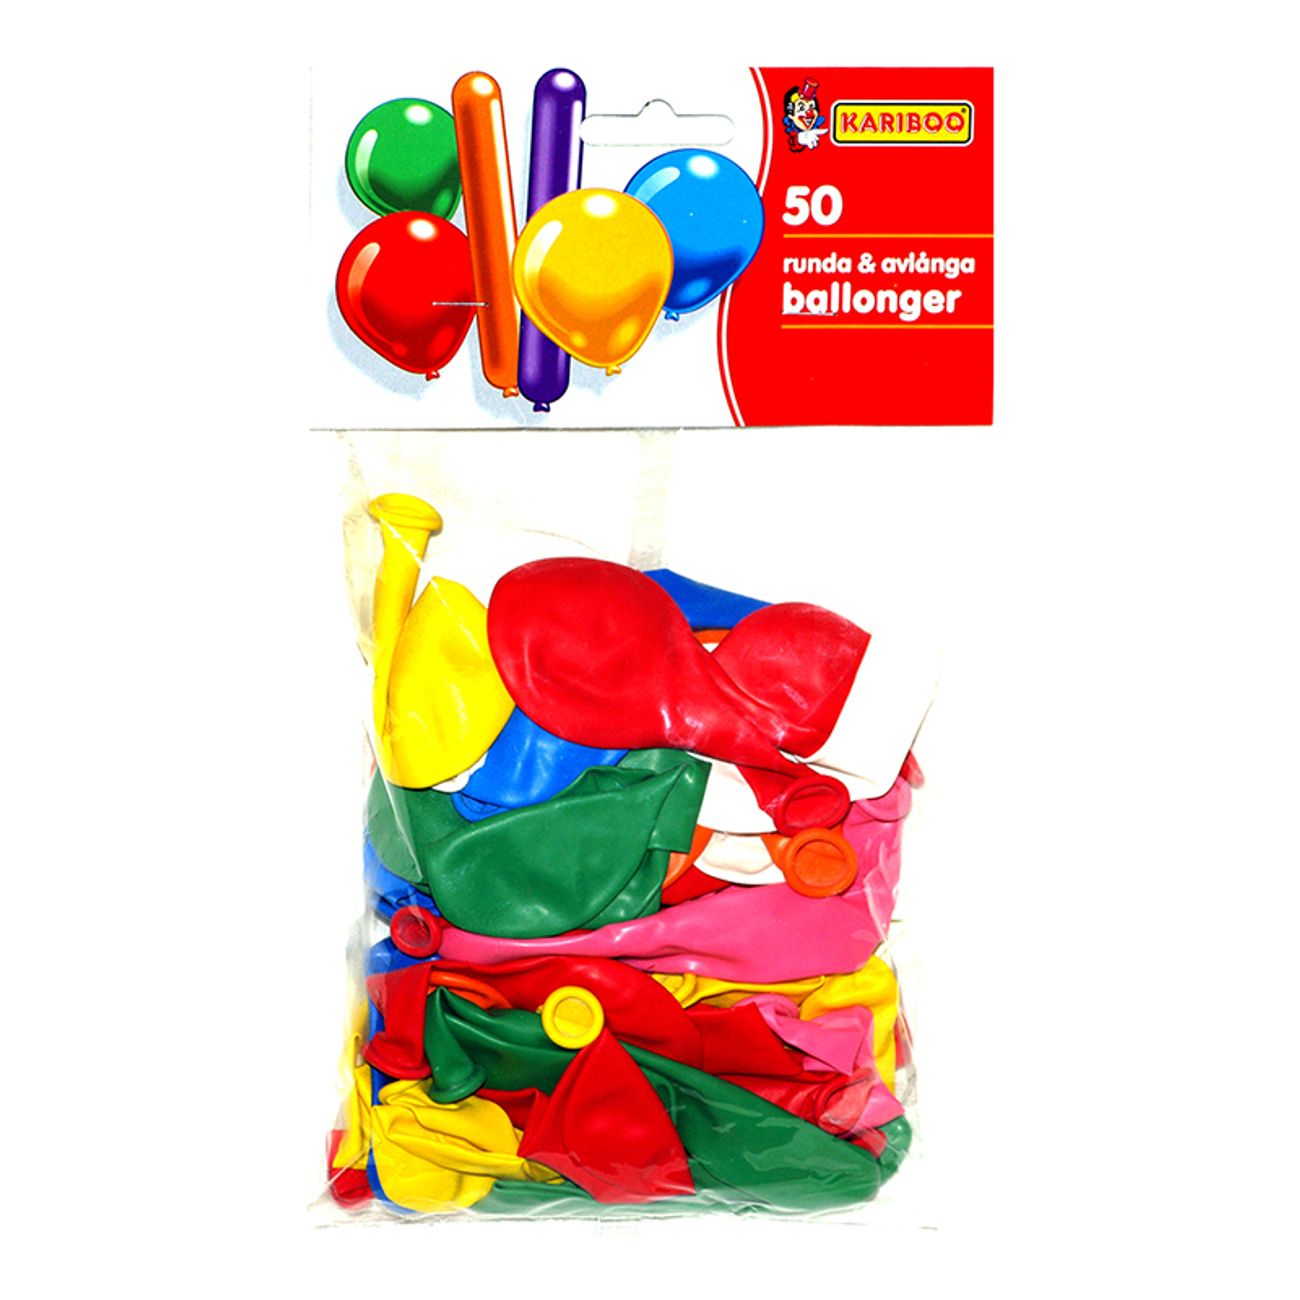 ballonger-runda-avlanga-1